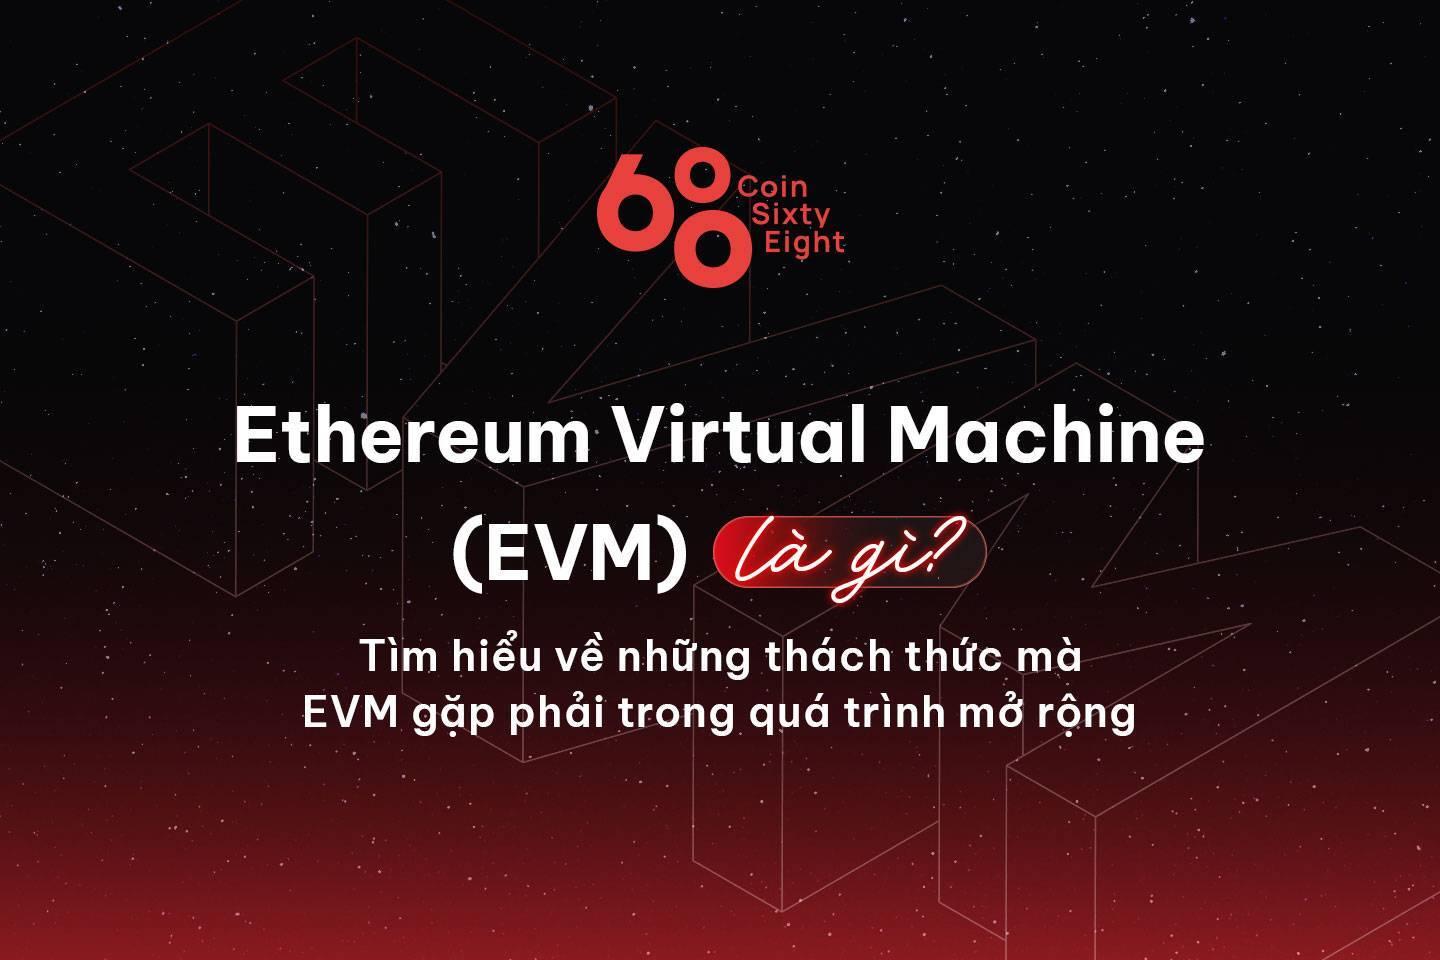 ethereum-virtual-machine-evm-la-gi-tim-hieu-ve-nhung-thach-thuc-ma-evm-gap-phai-trong-qua-trinh-mo-rong